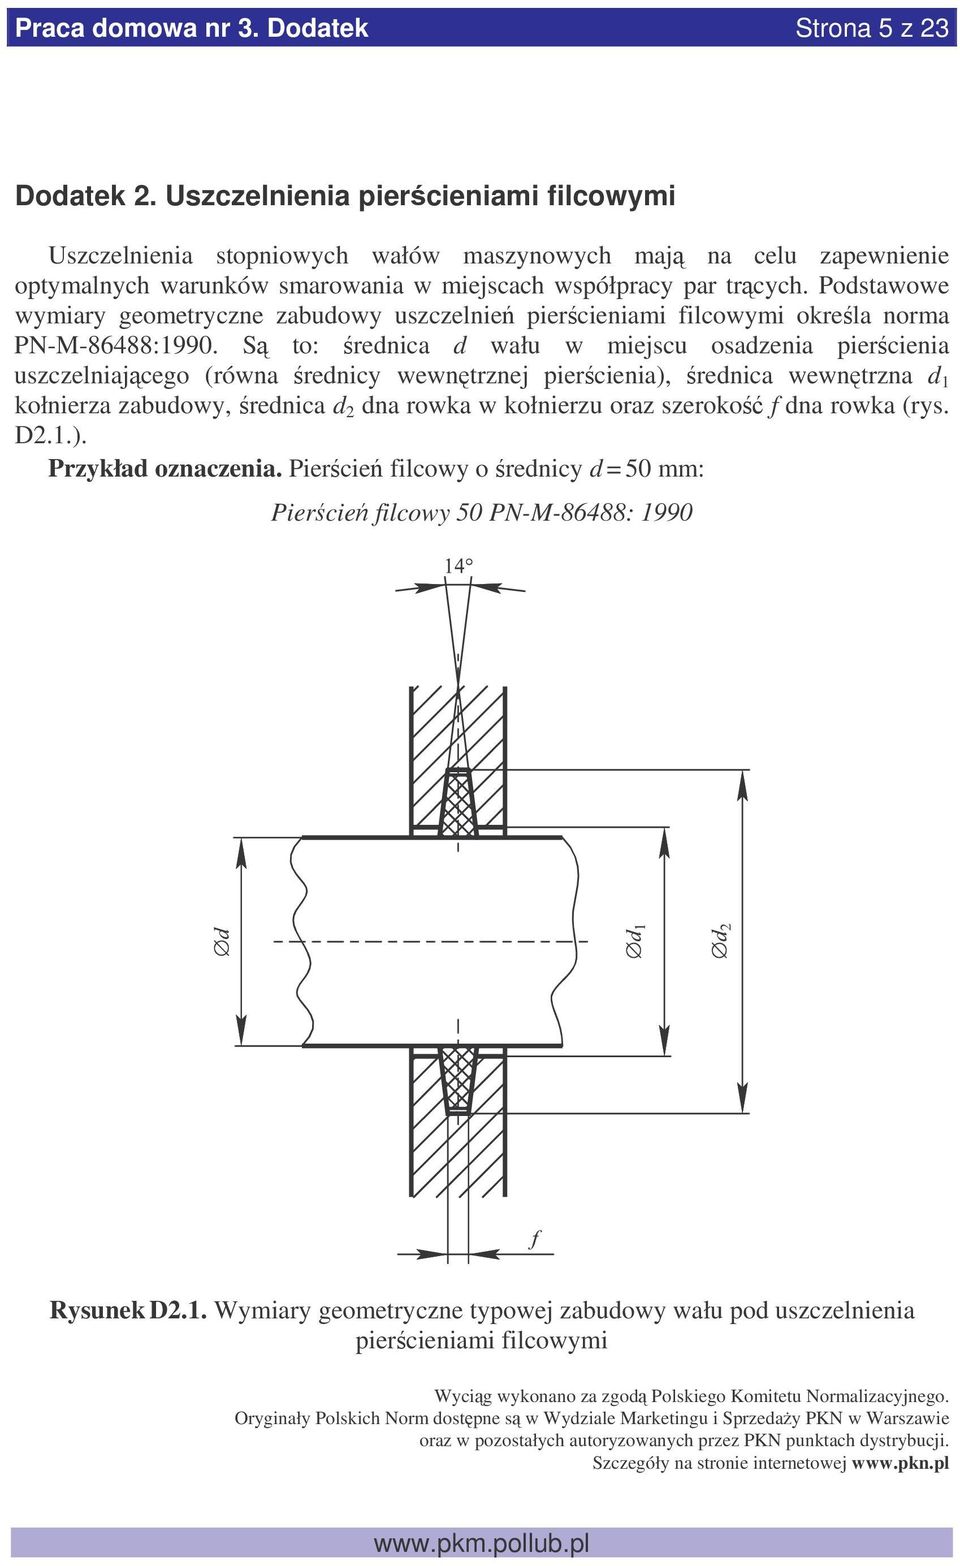 Podstawowe wymiary geometryczne zabudowy uszczelnie piercieniami filcowymi okrela norma PN-M-86488:1990.